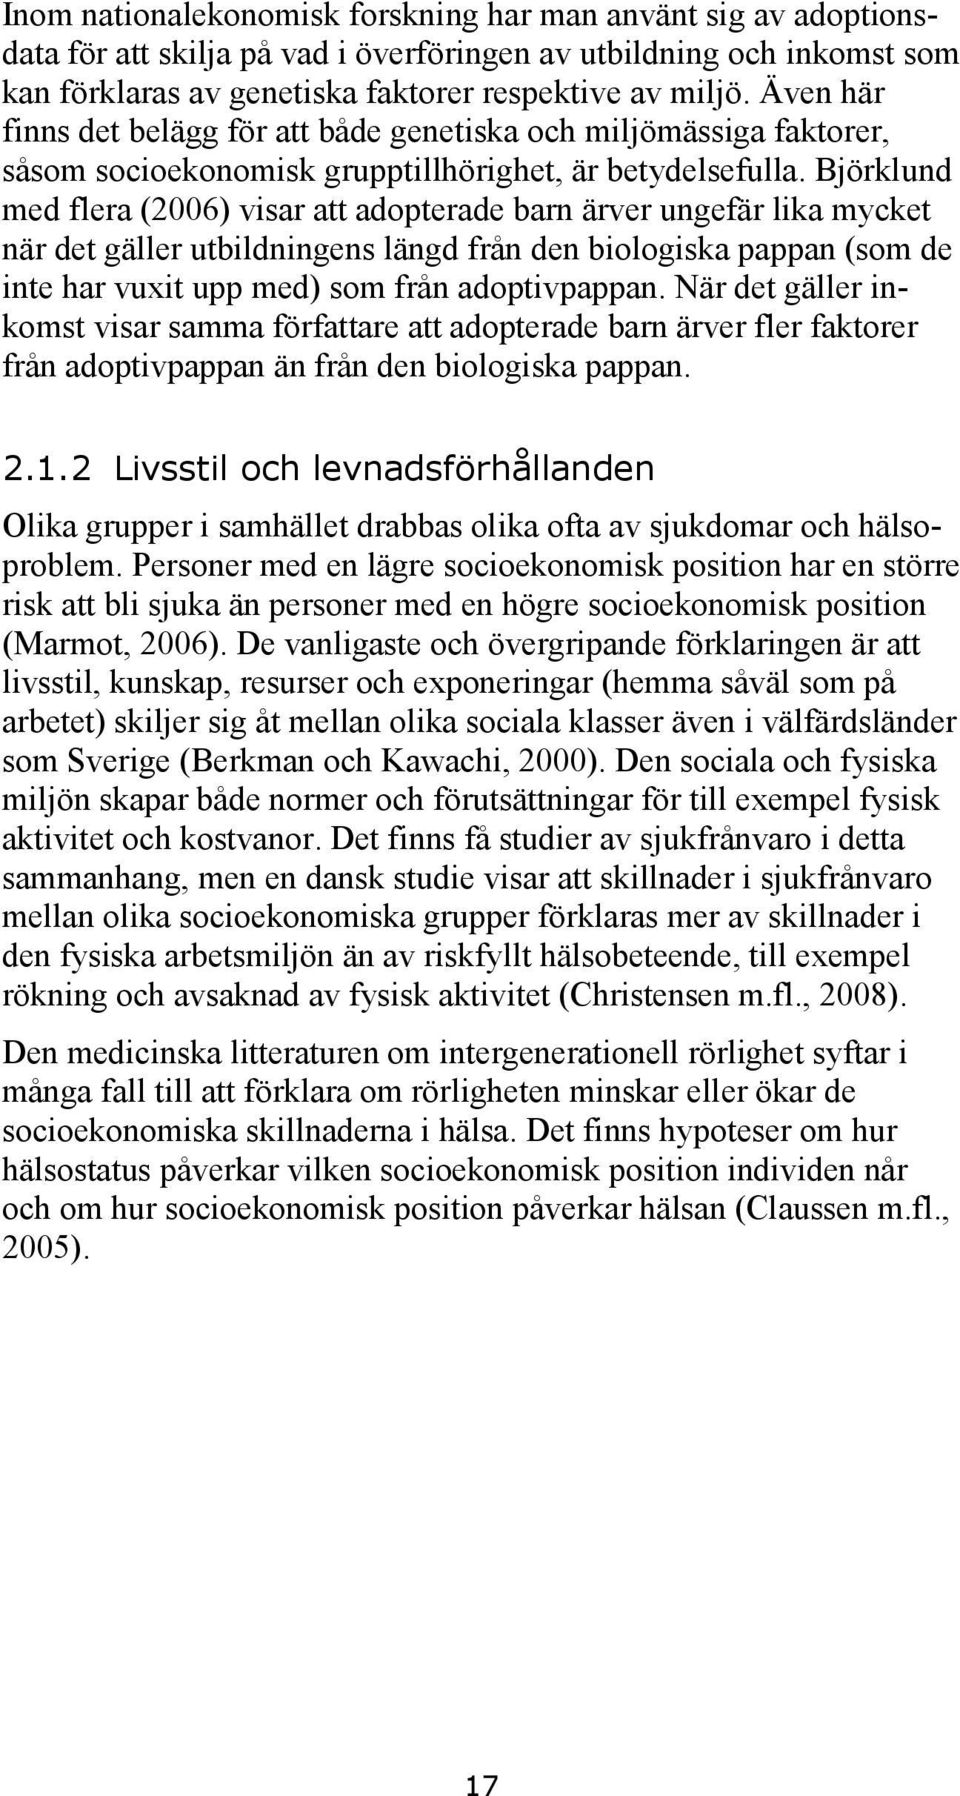 Björklund med flera (2006) visar att adopterade barn ärver ungefär lika mycket när det gäller utbildningens längd från den biologiska pappan (som de inte har vuxit upp med) som från adoptivpappan.